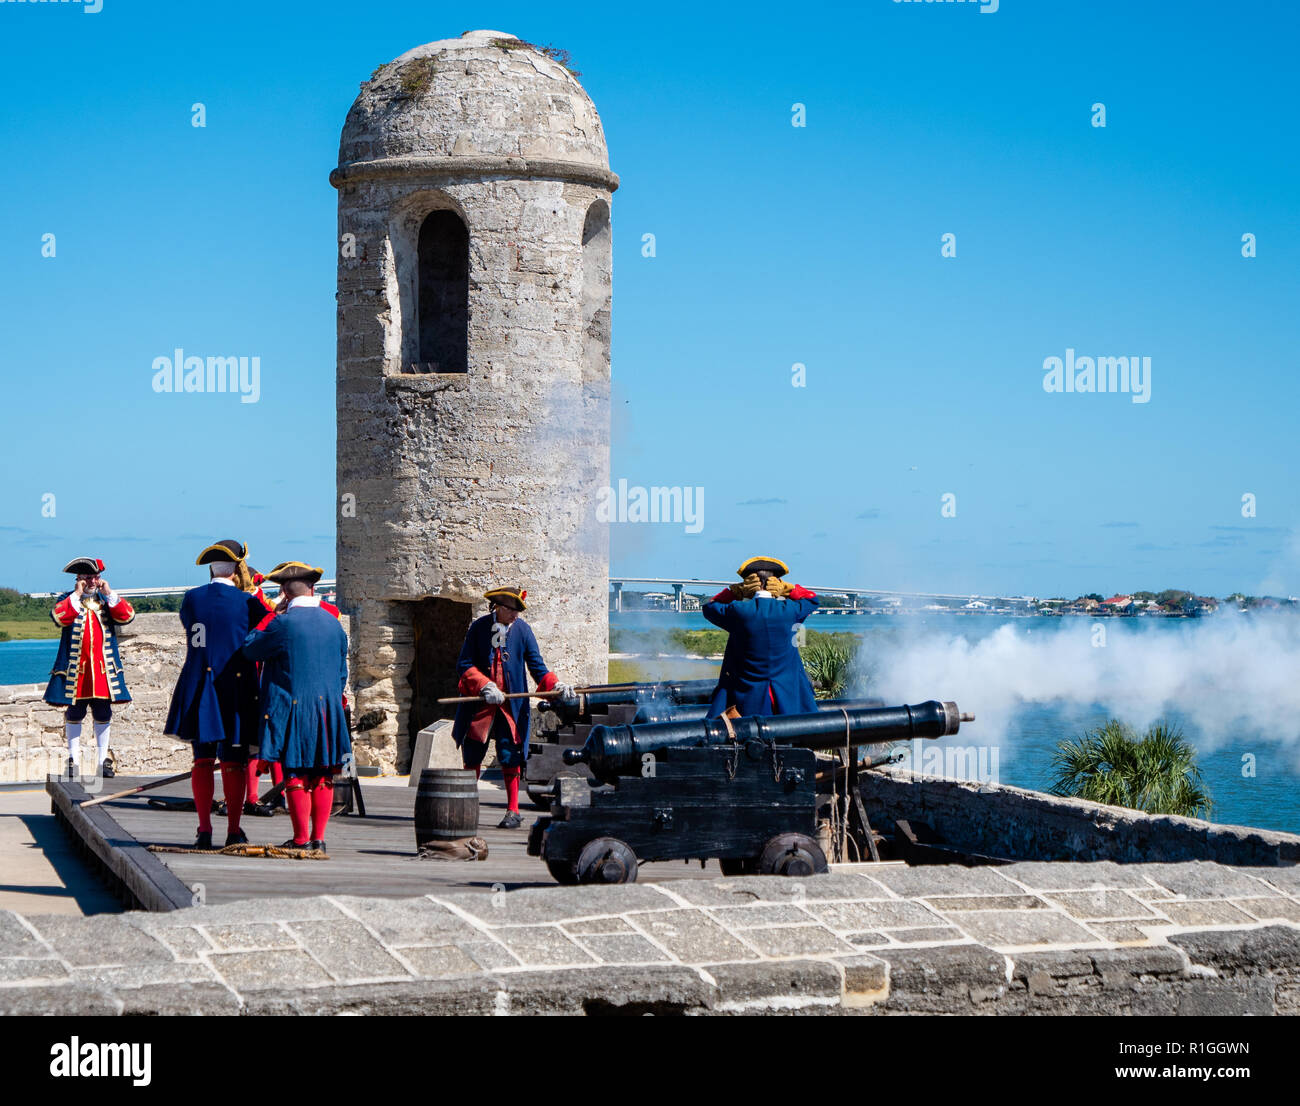 Männer im achtzehnten Jahrhundert spanische Militär Kostüm am Castillo de San Marcos in St Augustine Florida USA Abfeuern einer Kanone auf den Zinnen Stockfoto